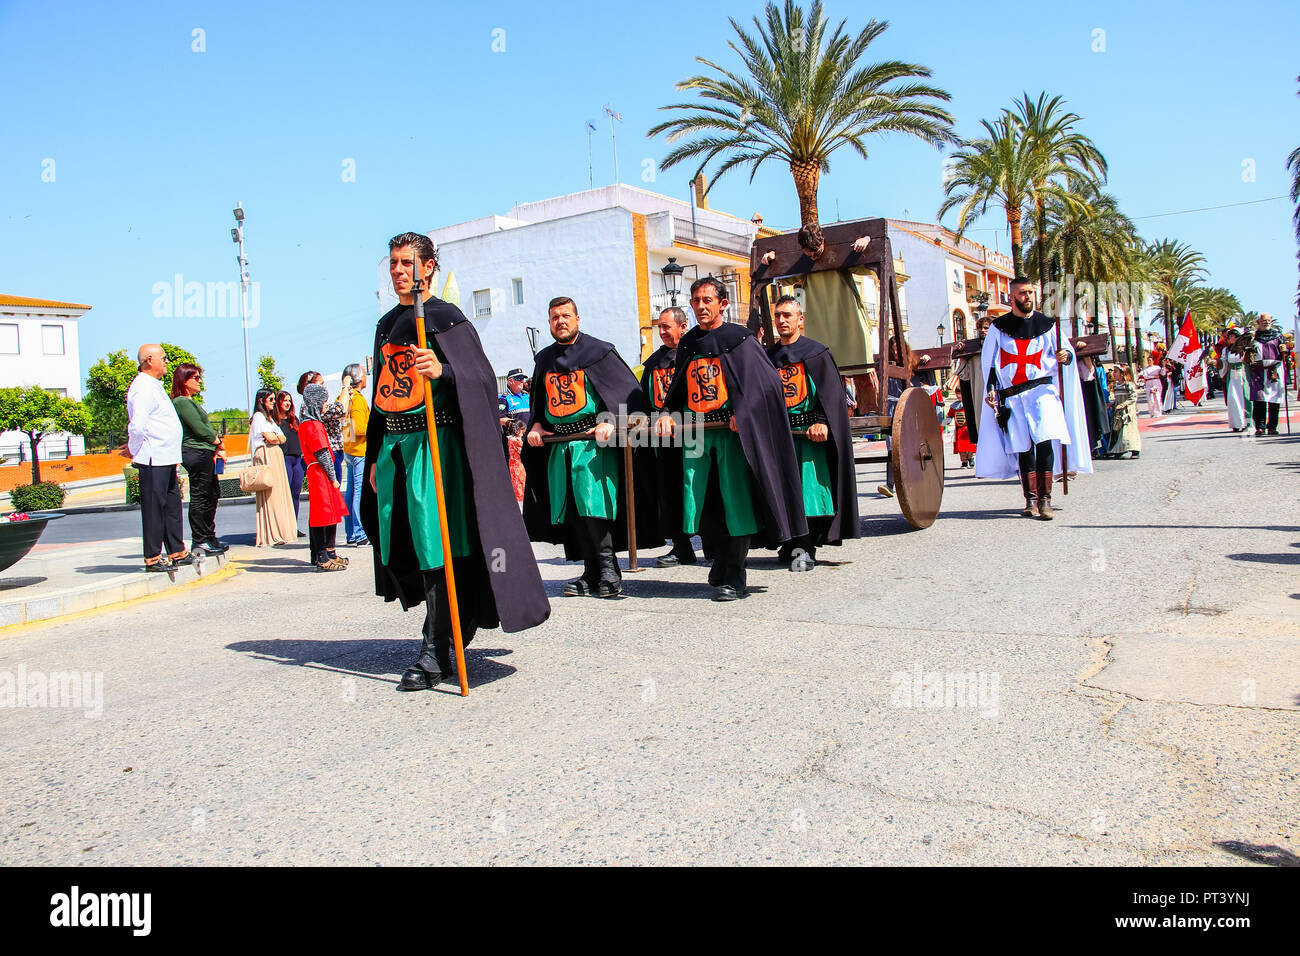 Palos de la Frontera, Huelva, Spain - MARCH 18, 2017: Parade in Discovery's Medieval Fair in a town called Palos de la Frontera Stock Photo